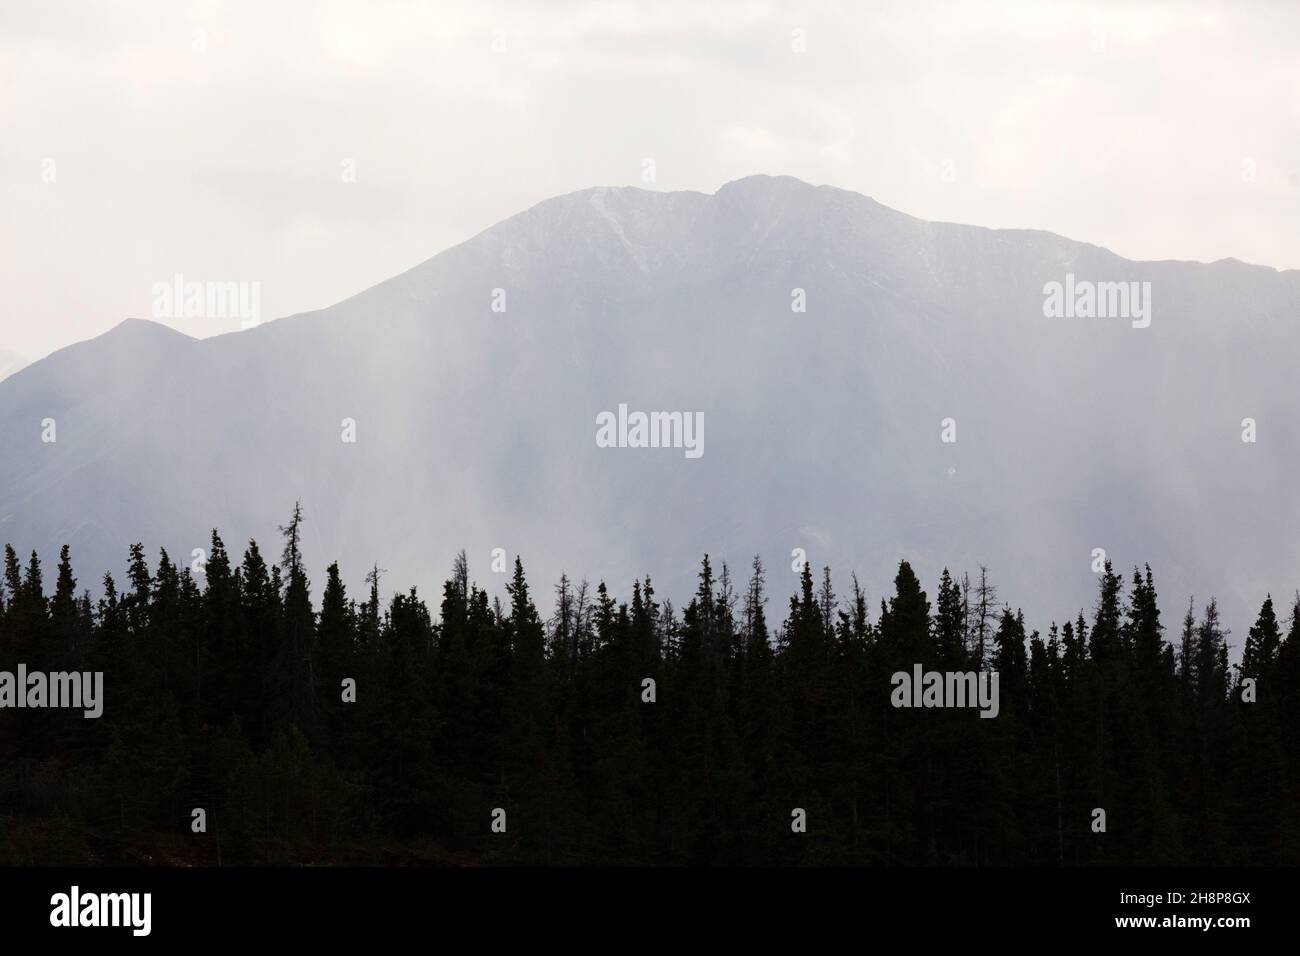 Les montagnes s'élèvent au-dessus de la forêt dense dans le parc national et la réserve Kluane au Yukon, au Canada. Banque D'Images